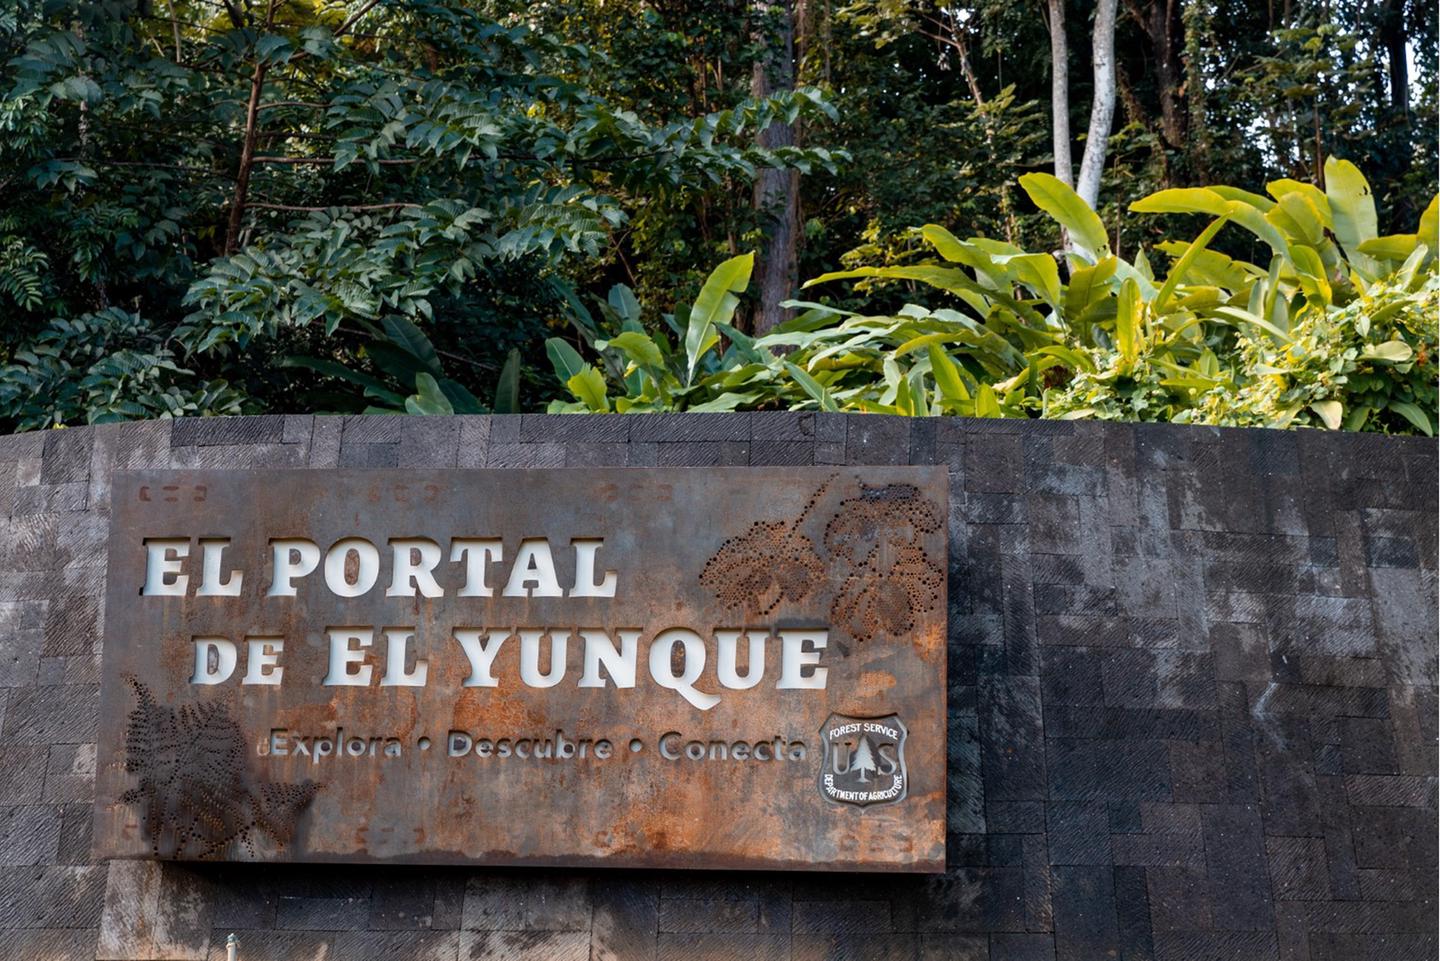 El Portal de El Yunque